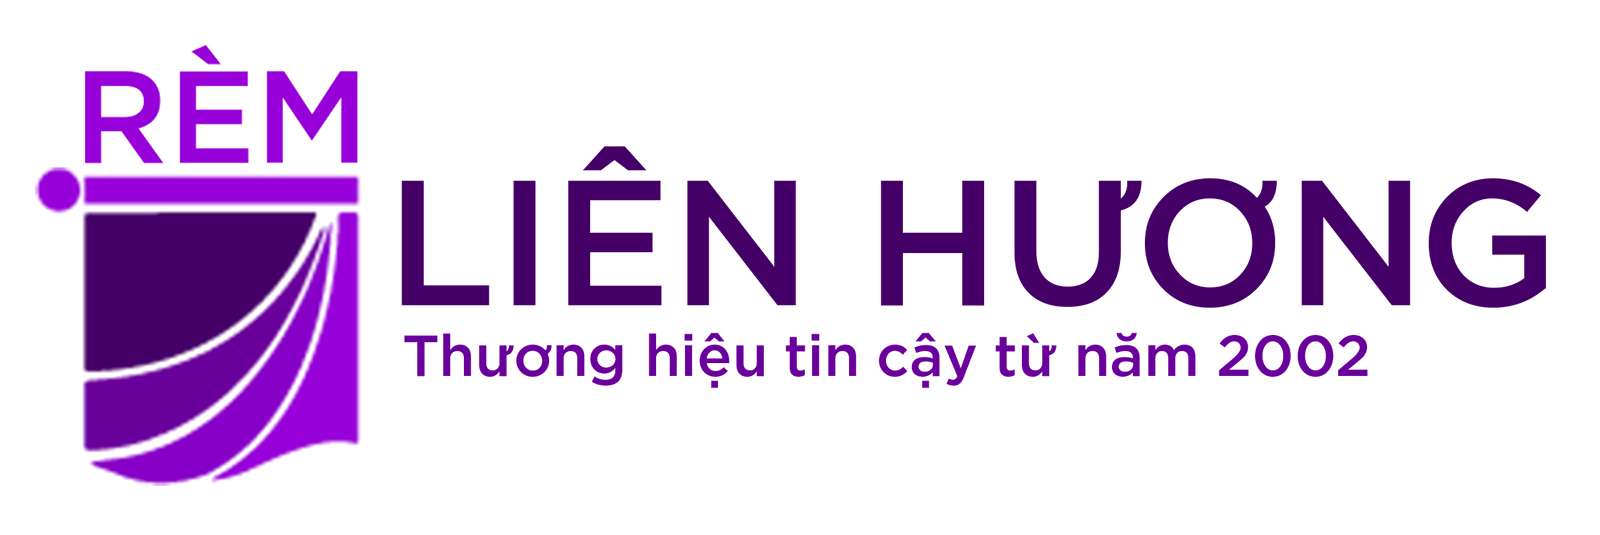 Logo Rem Lien Huong